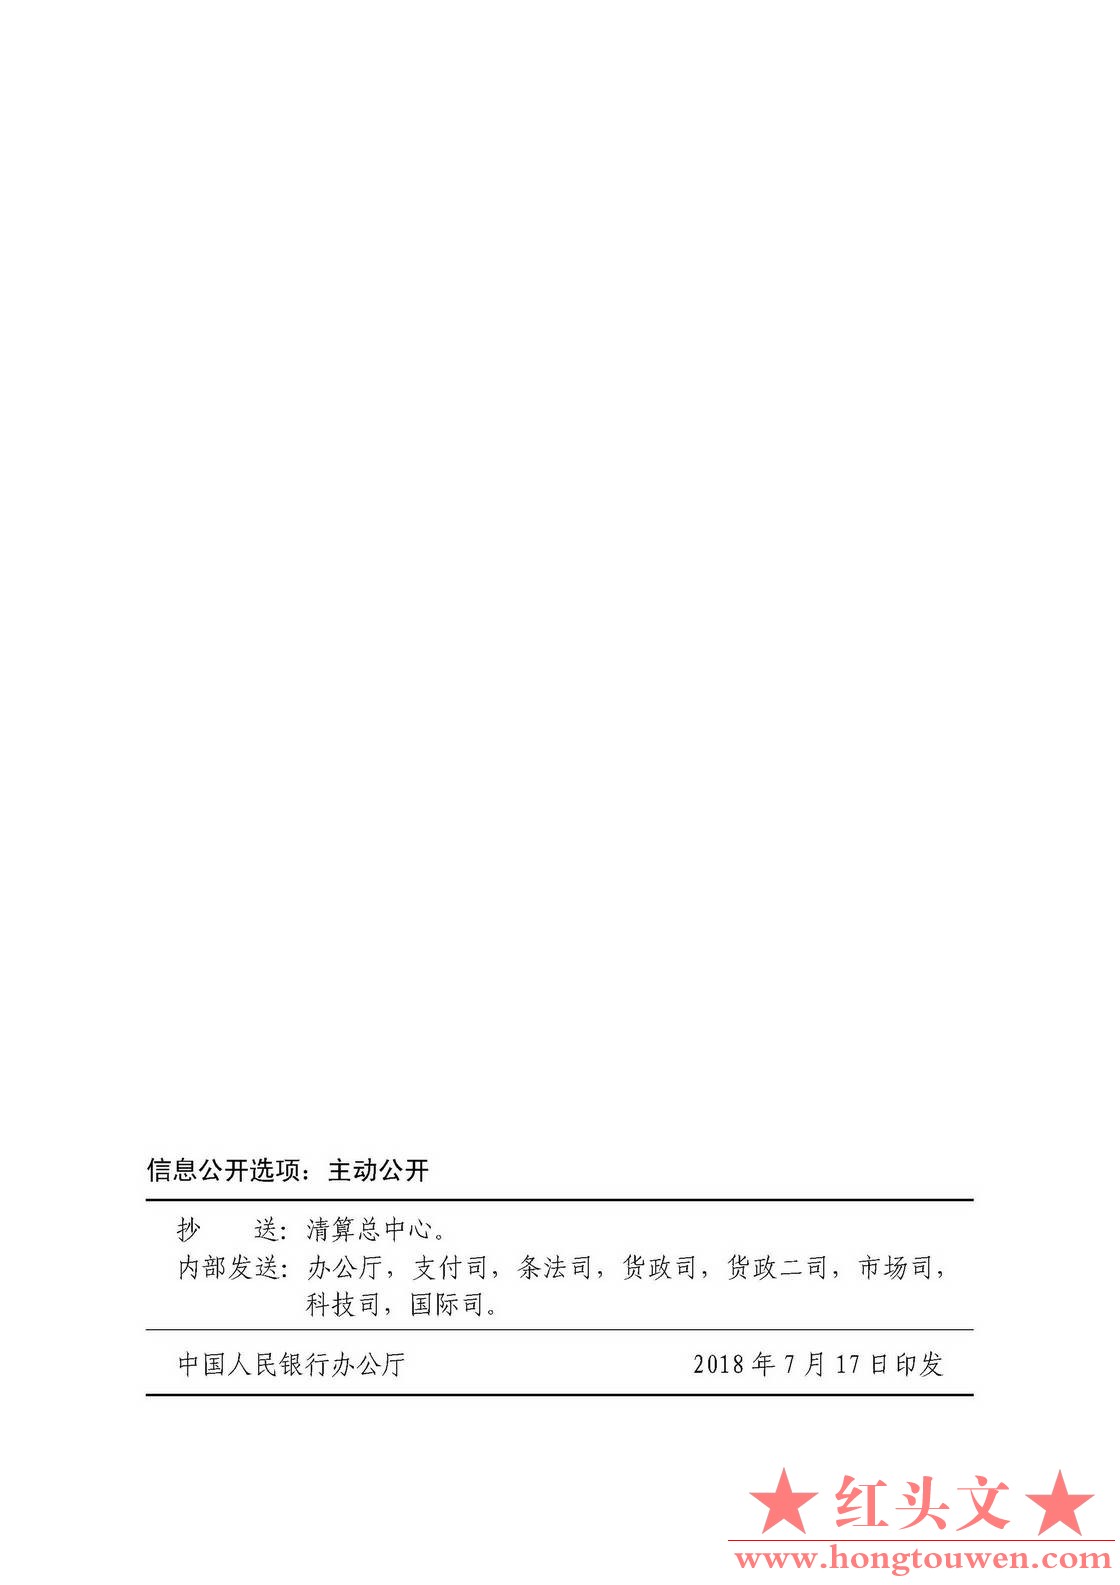 银发[2018]176号-中国人民银行关于加强跨境金融网络与信息服务管理的通知_页面_7.jpg.jpg